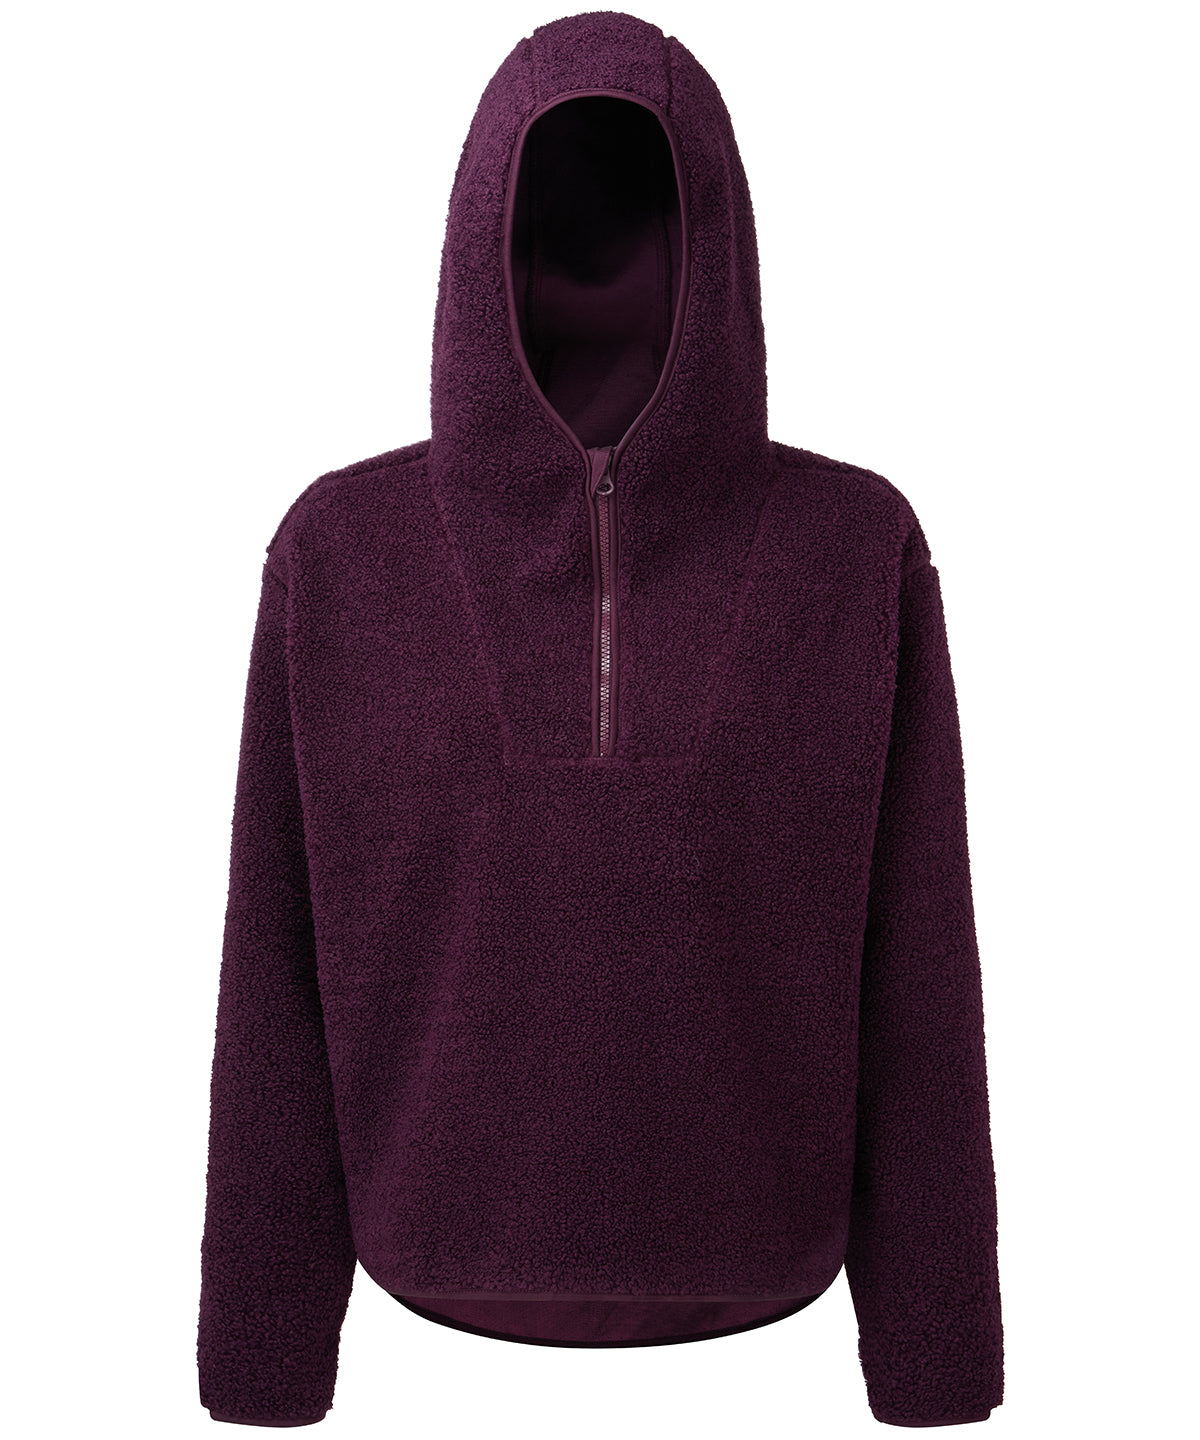 Personalised Hoodies - Black TriDri® Women's TriDri® sherpa ¼-zip hoodie